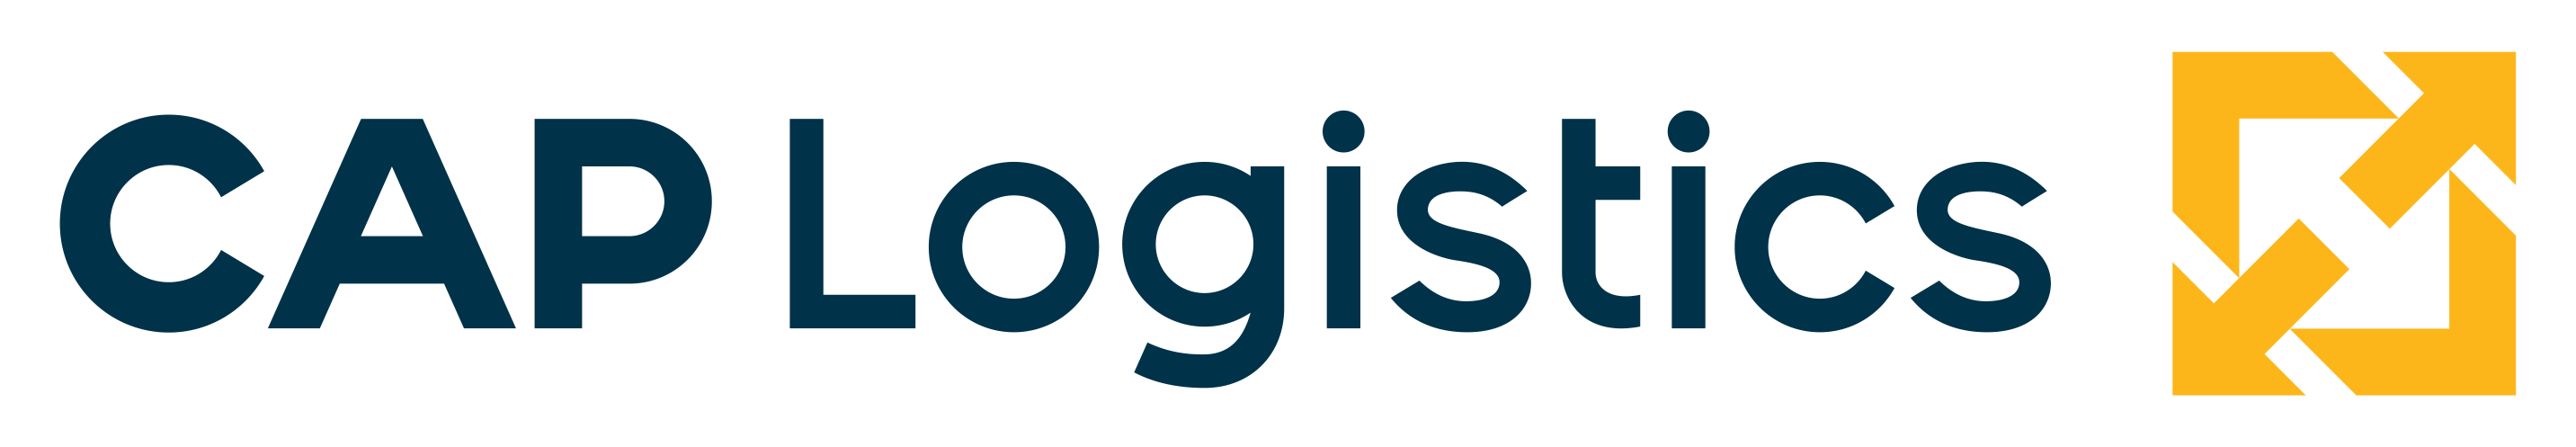 Cap Logistics Logo